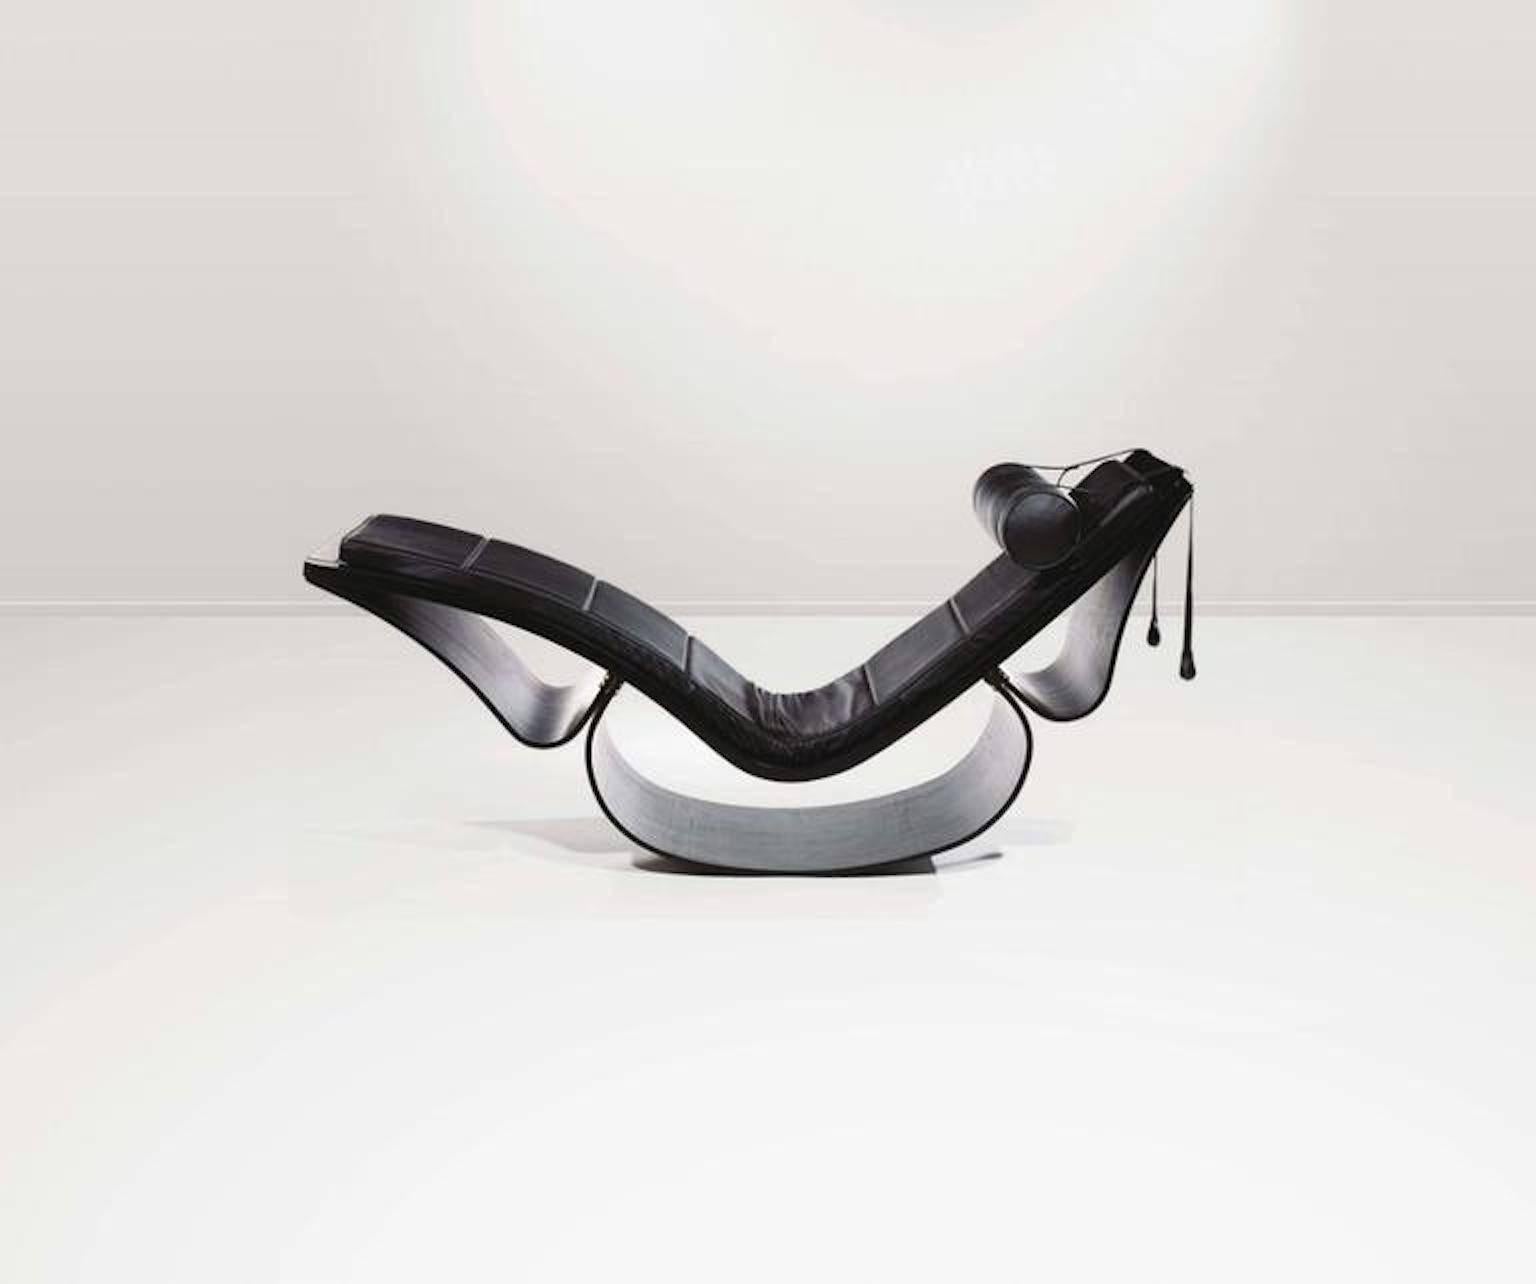 Chaise longue sculpturale à bascule Rio, conçue en 1978, édition contemporaine. Piètement composé de trois éléments dont des rubans souples de stratifié de frêne foncé moulé, coussins maintenus par des sangles sur l'assise et le dossier, appui-tête